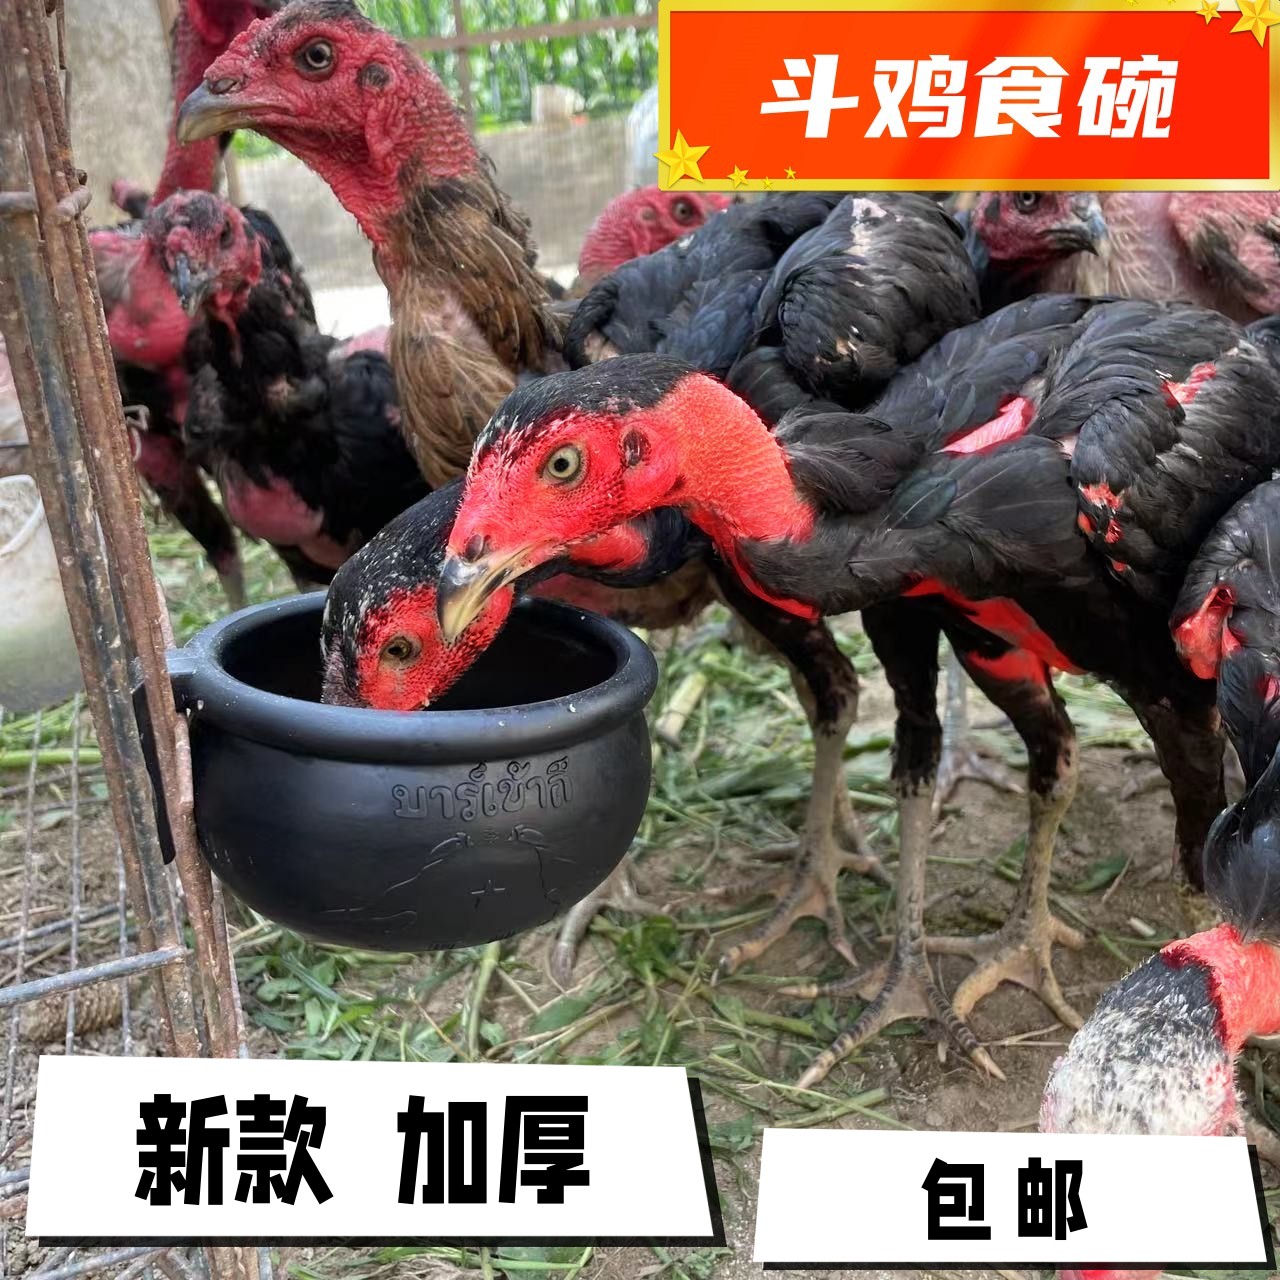 斗鸡橡胶碗斗鸡食槽斗鸡水槽斗鸡训用品斗鸡鸡碗斗鸡水杯加厚食槽